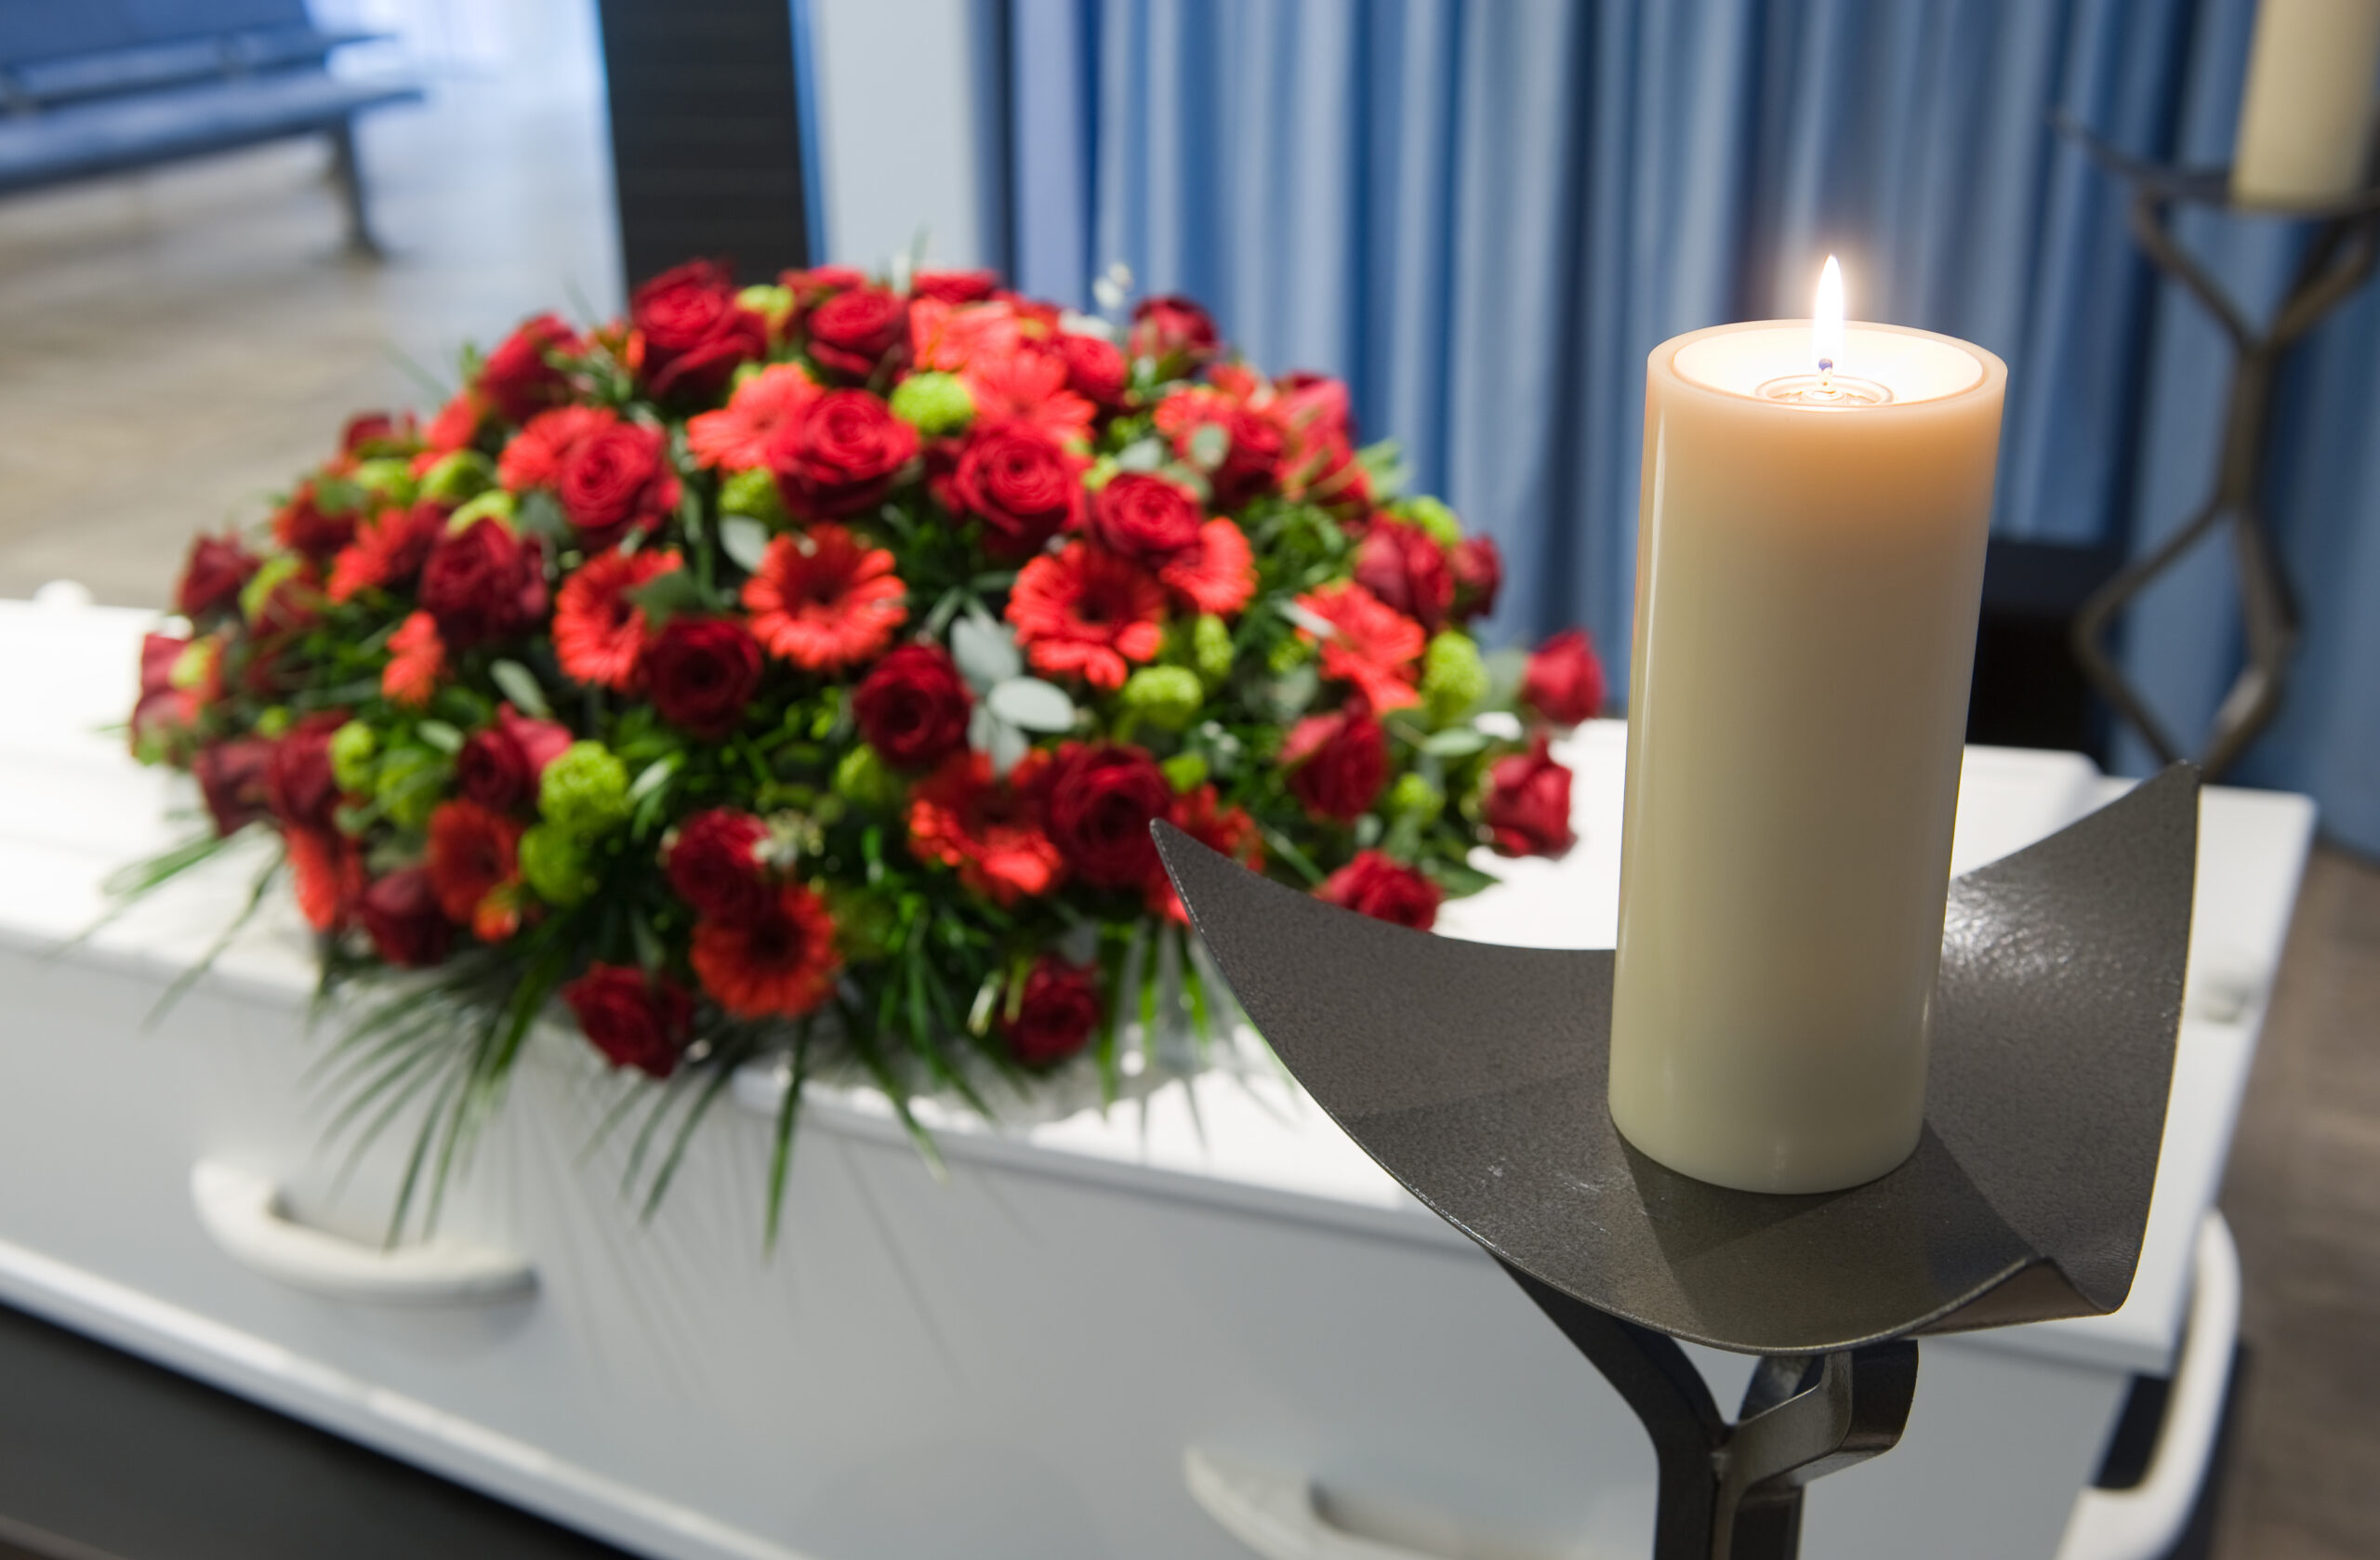 Honorer le défunt : comment organiser respectueusement une veillée funèbre à domicile ?